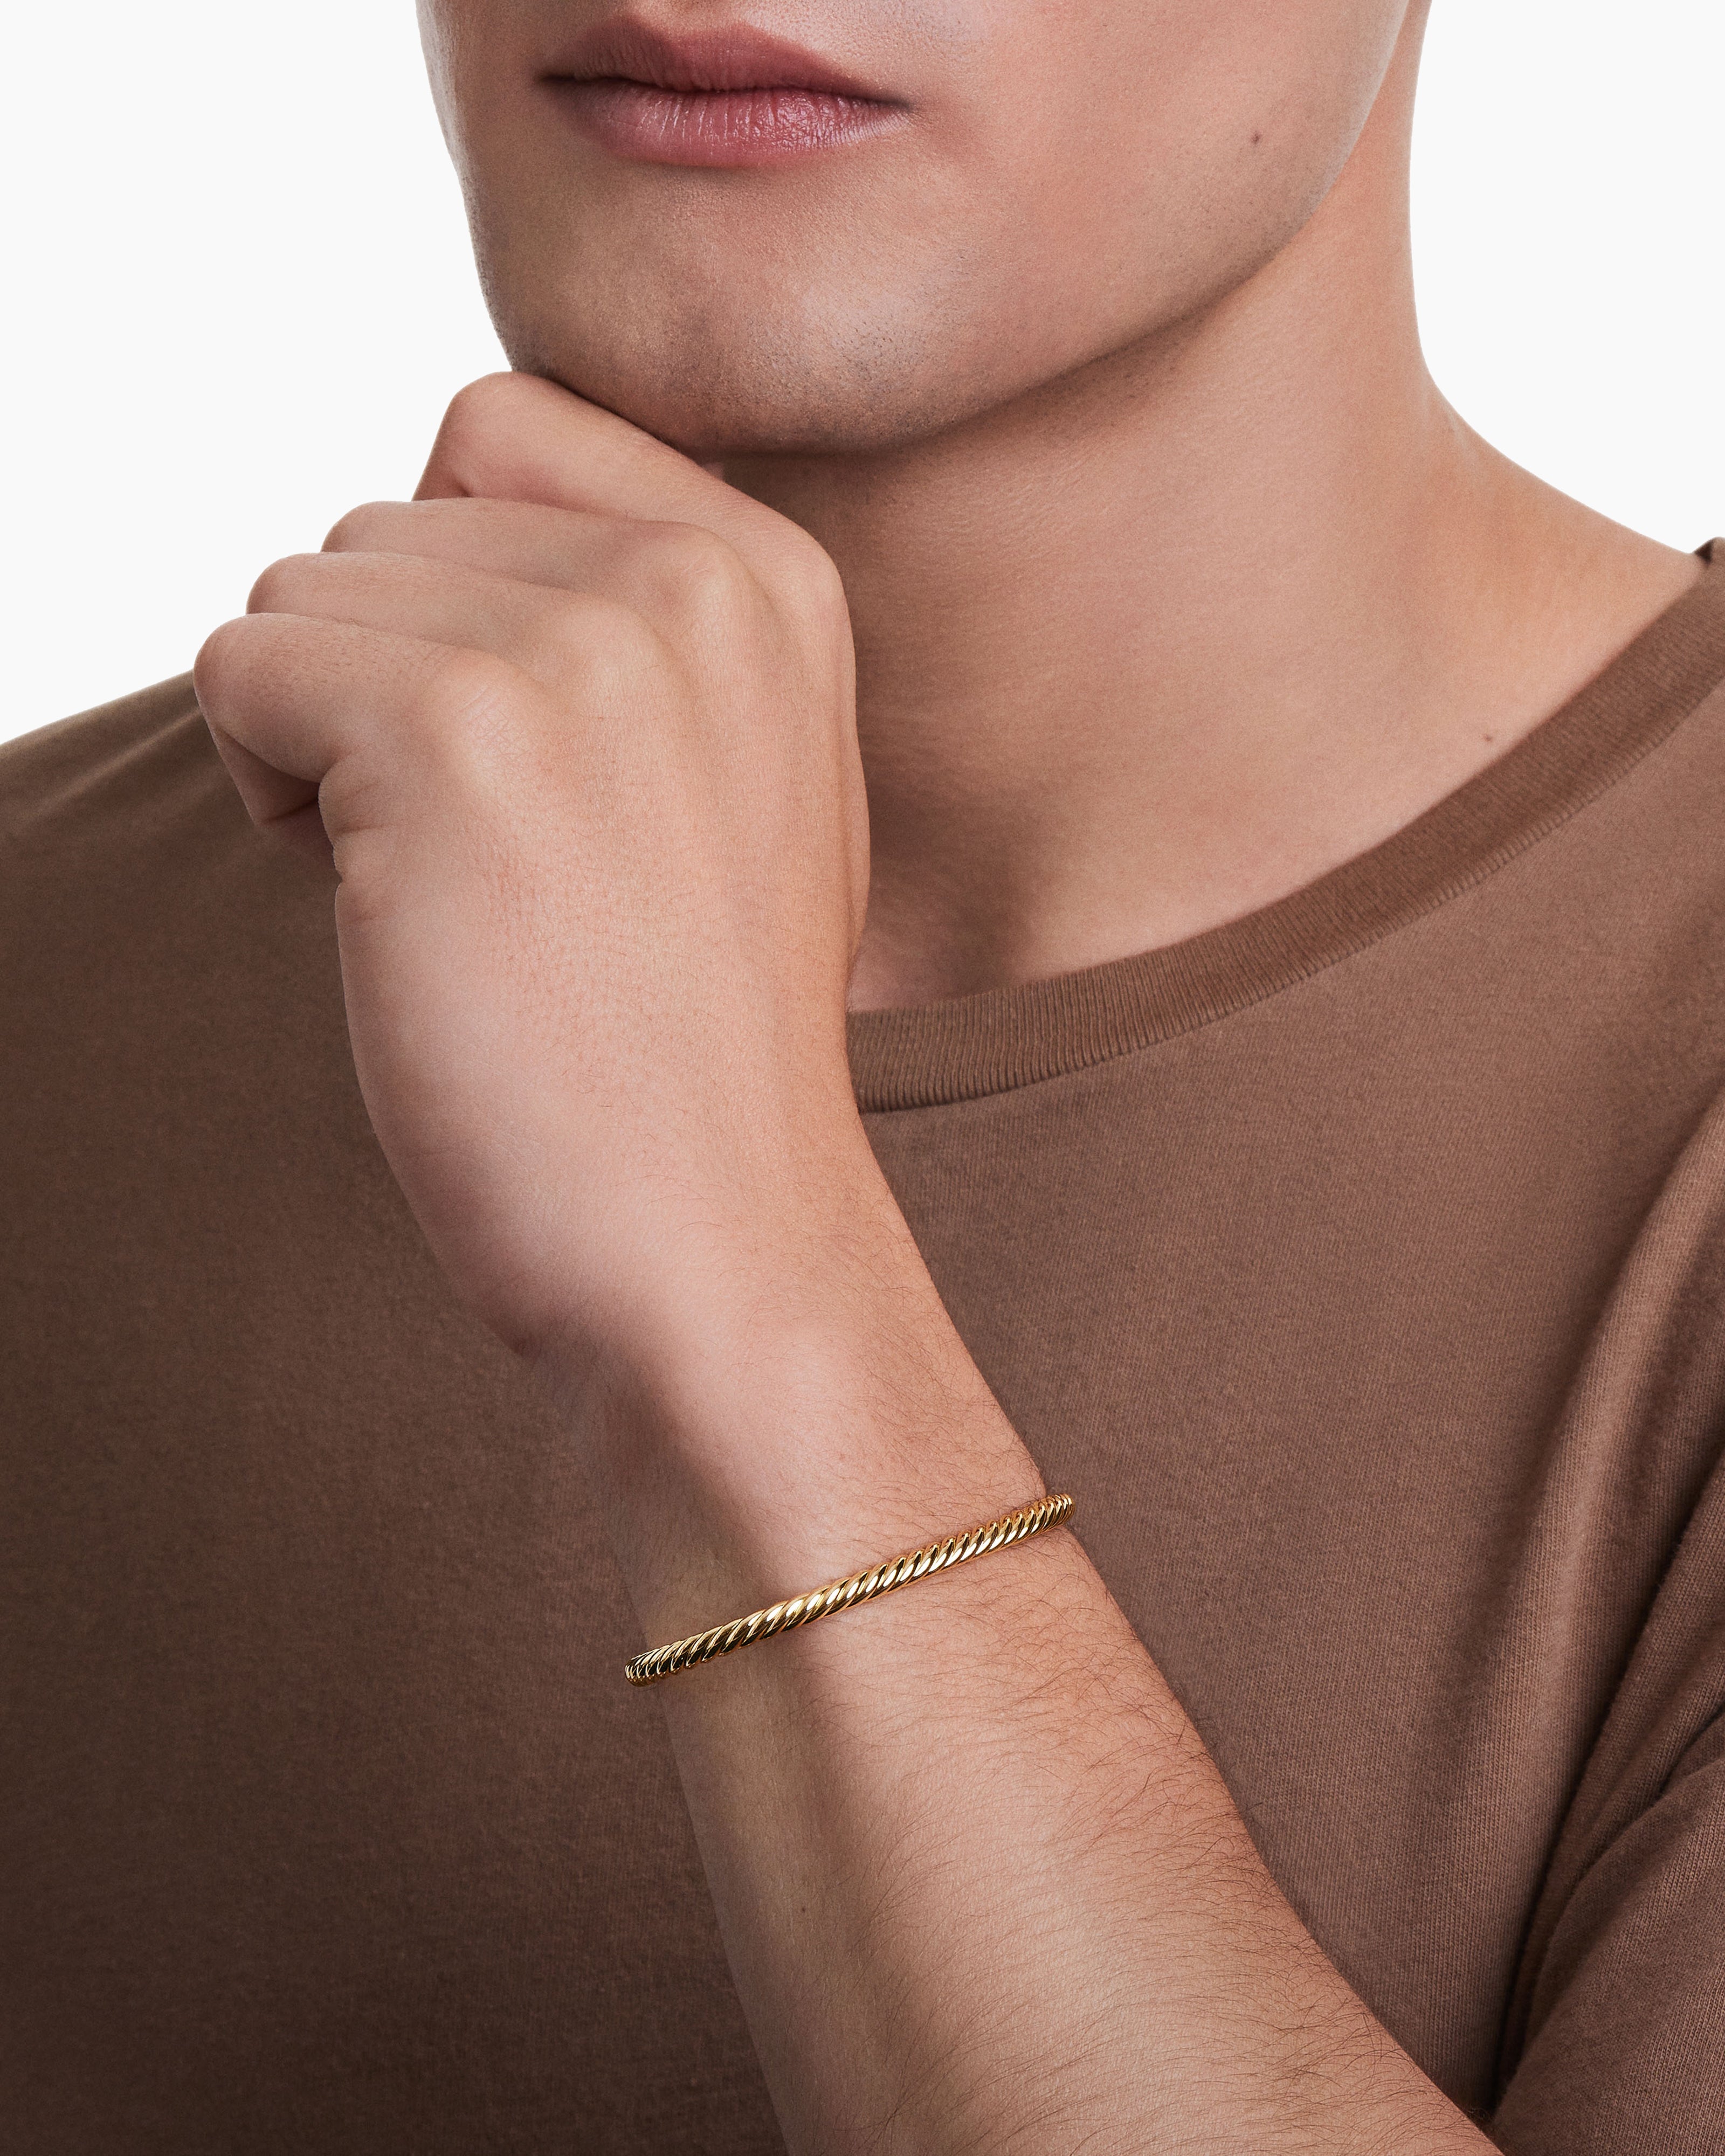 Men's Cable Cuff Bracelet